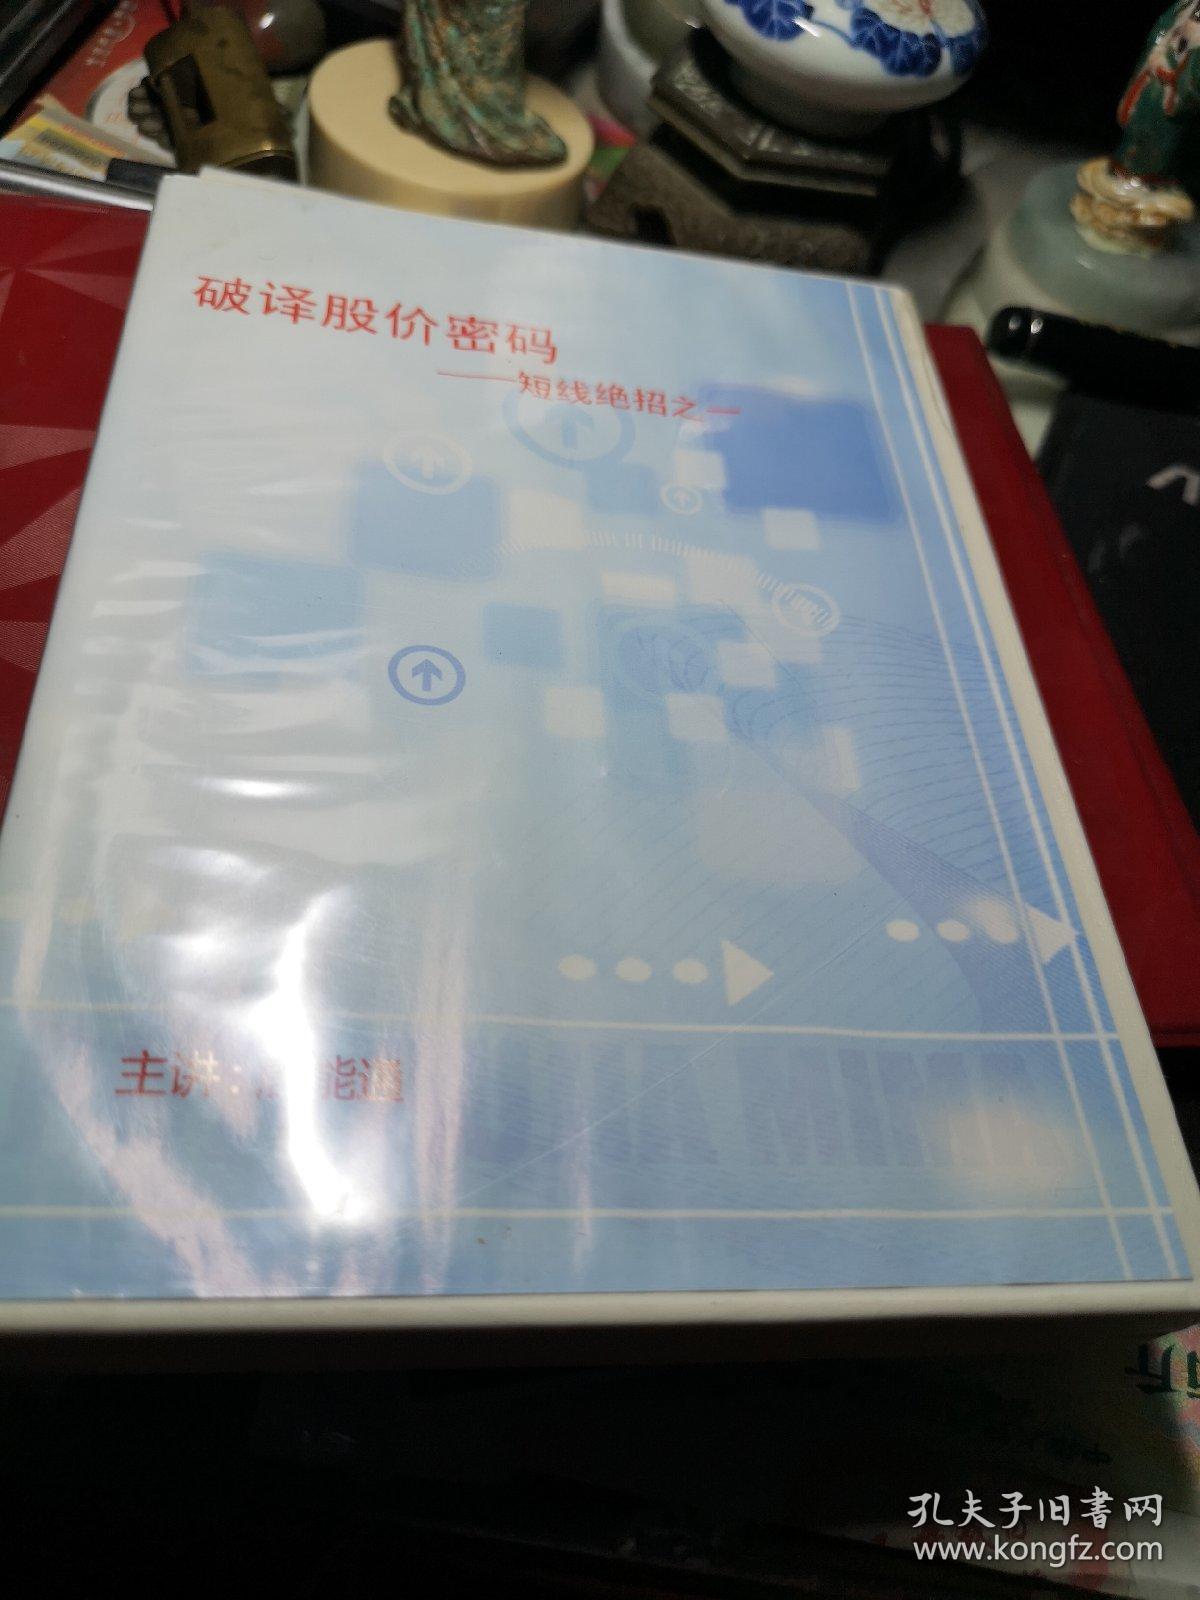 破 译 股 价 密 码   一   VCD 6碟装  短线绝招之一 VCD 6碟装 制作者:  四川电子音像出版中心出版  品相见图！